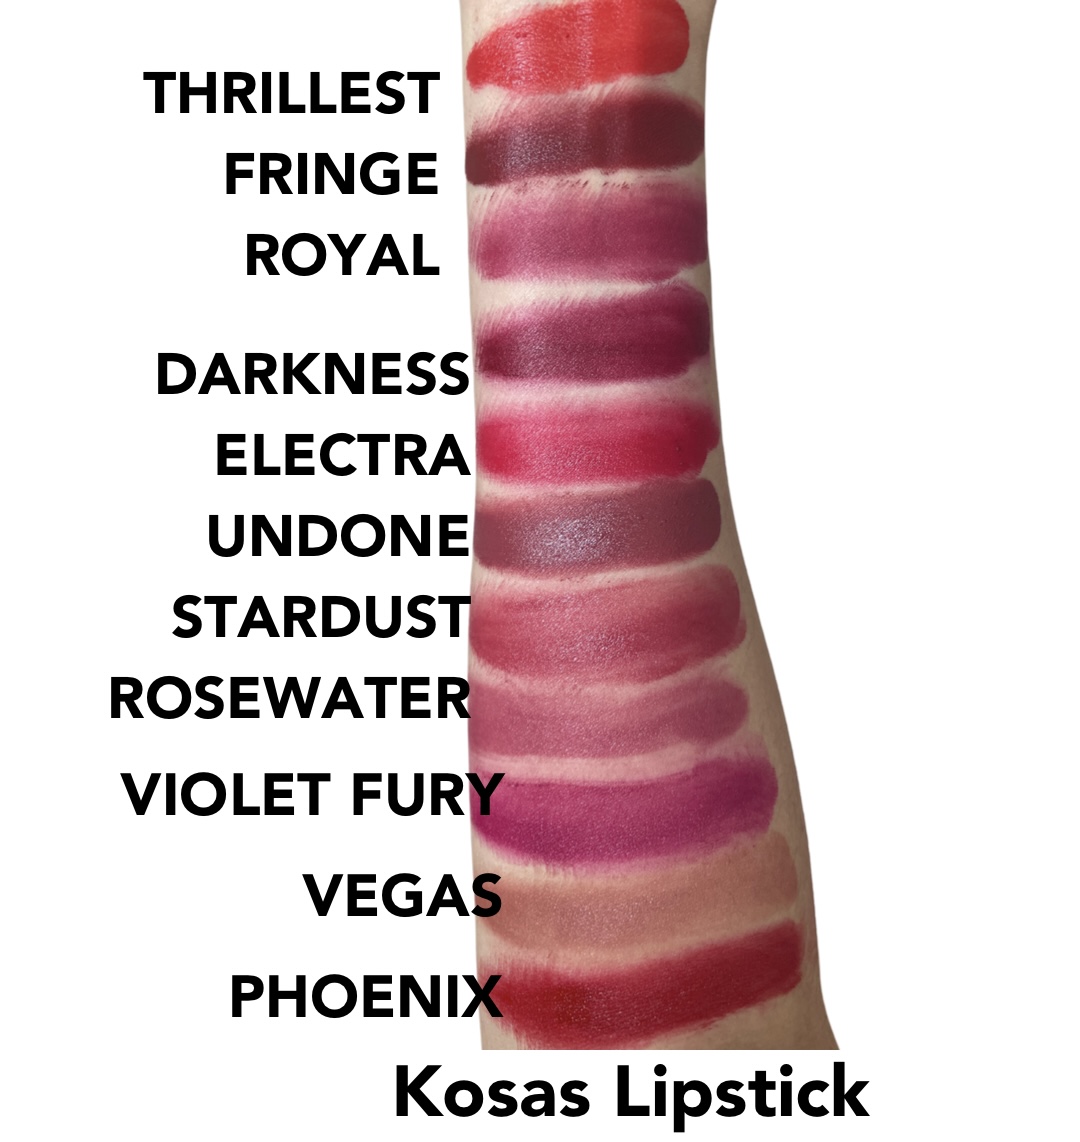 Kosas lipstick swatches